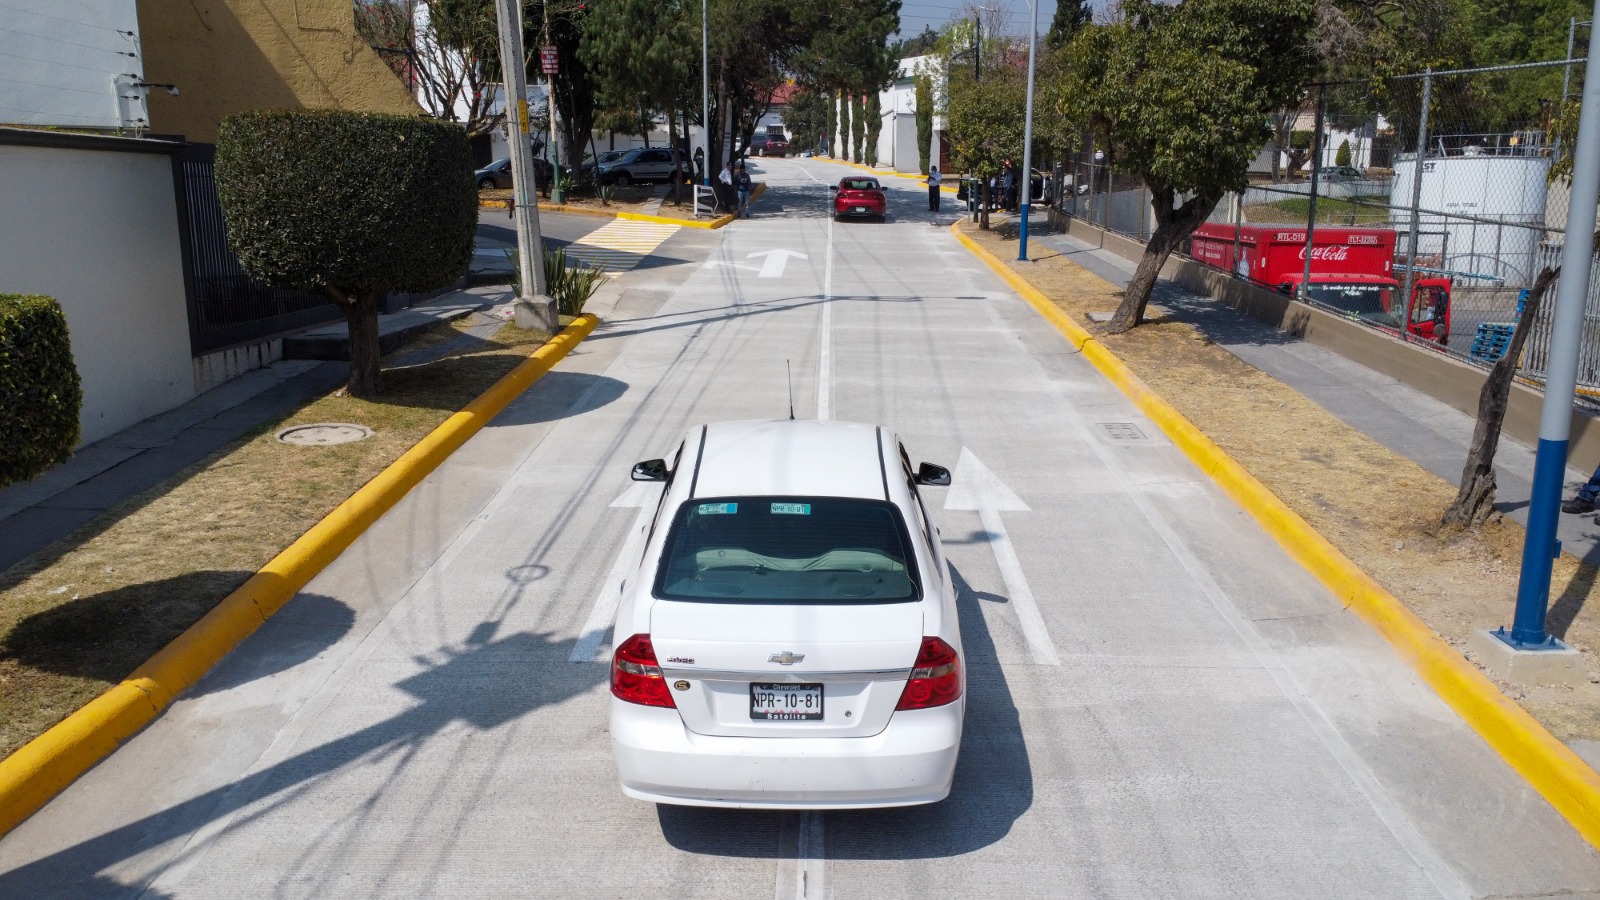 Vehículos recorren ya la avenida reconstruida por la que acceden a zona comercial en Zona Azul, Satélite y avenida López Mateos